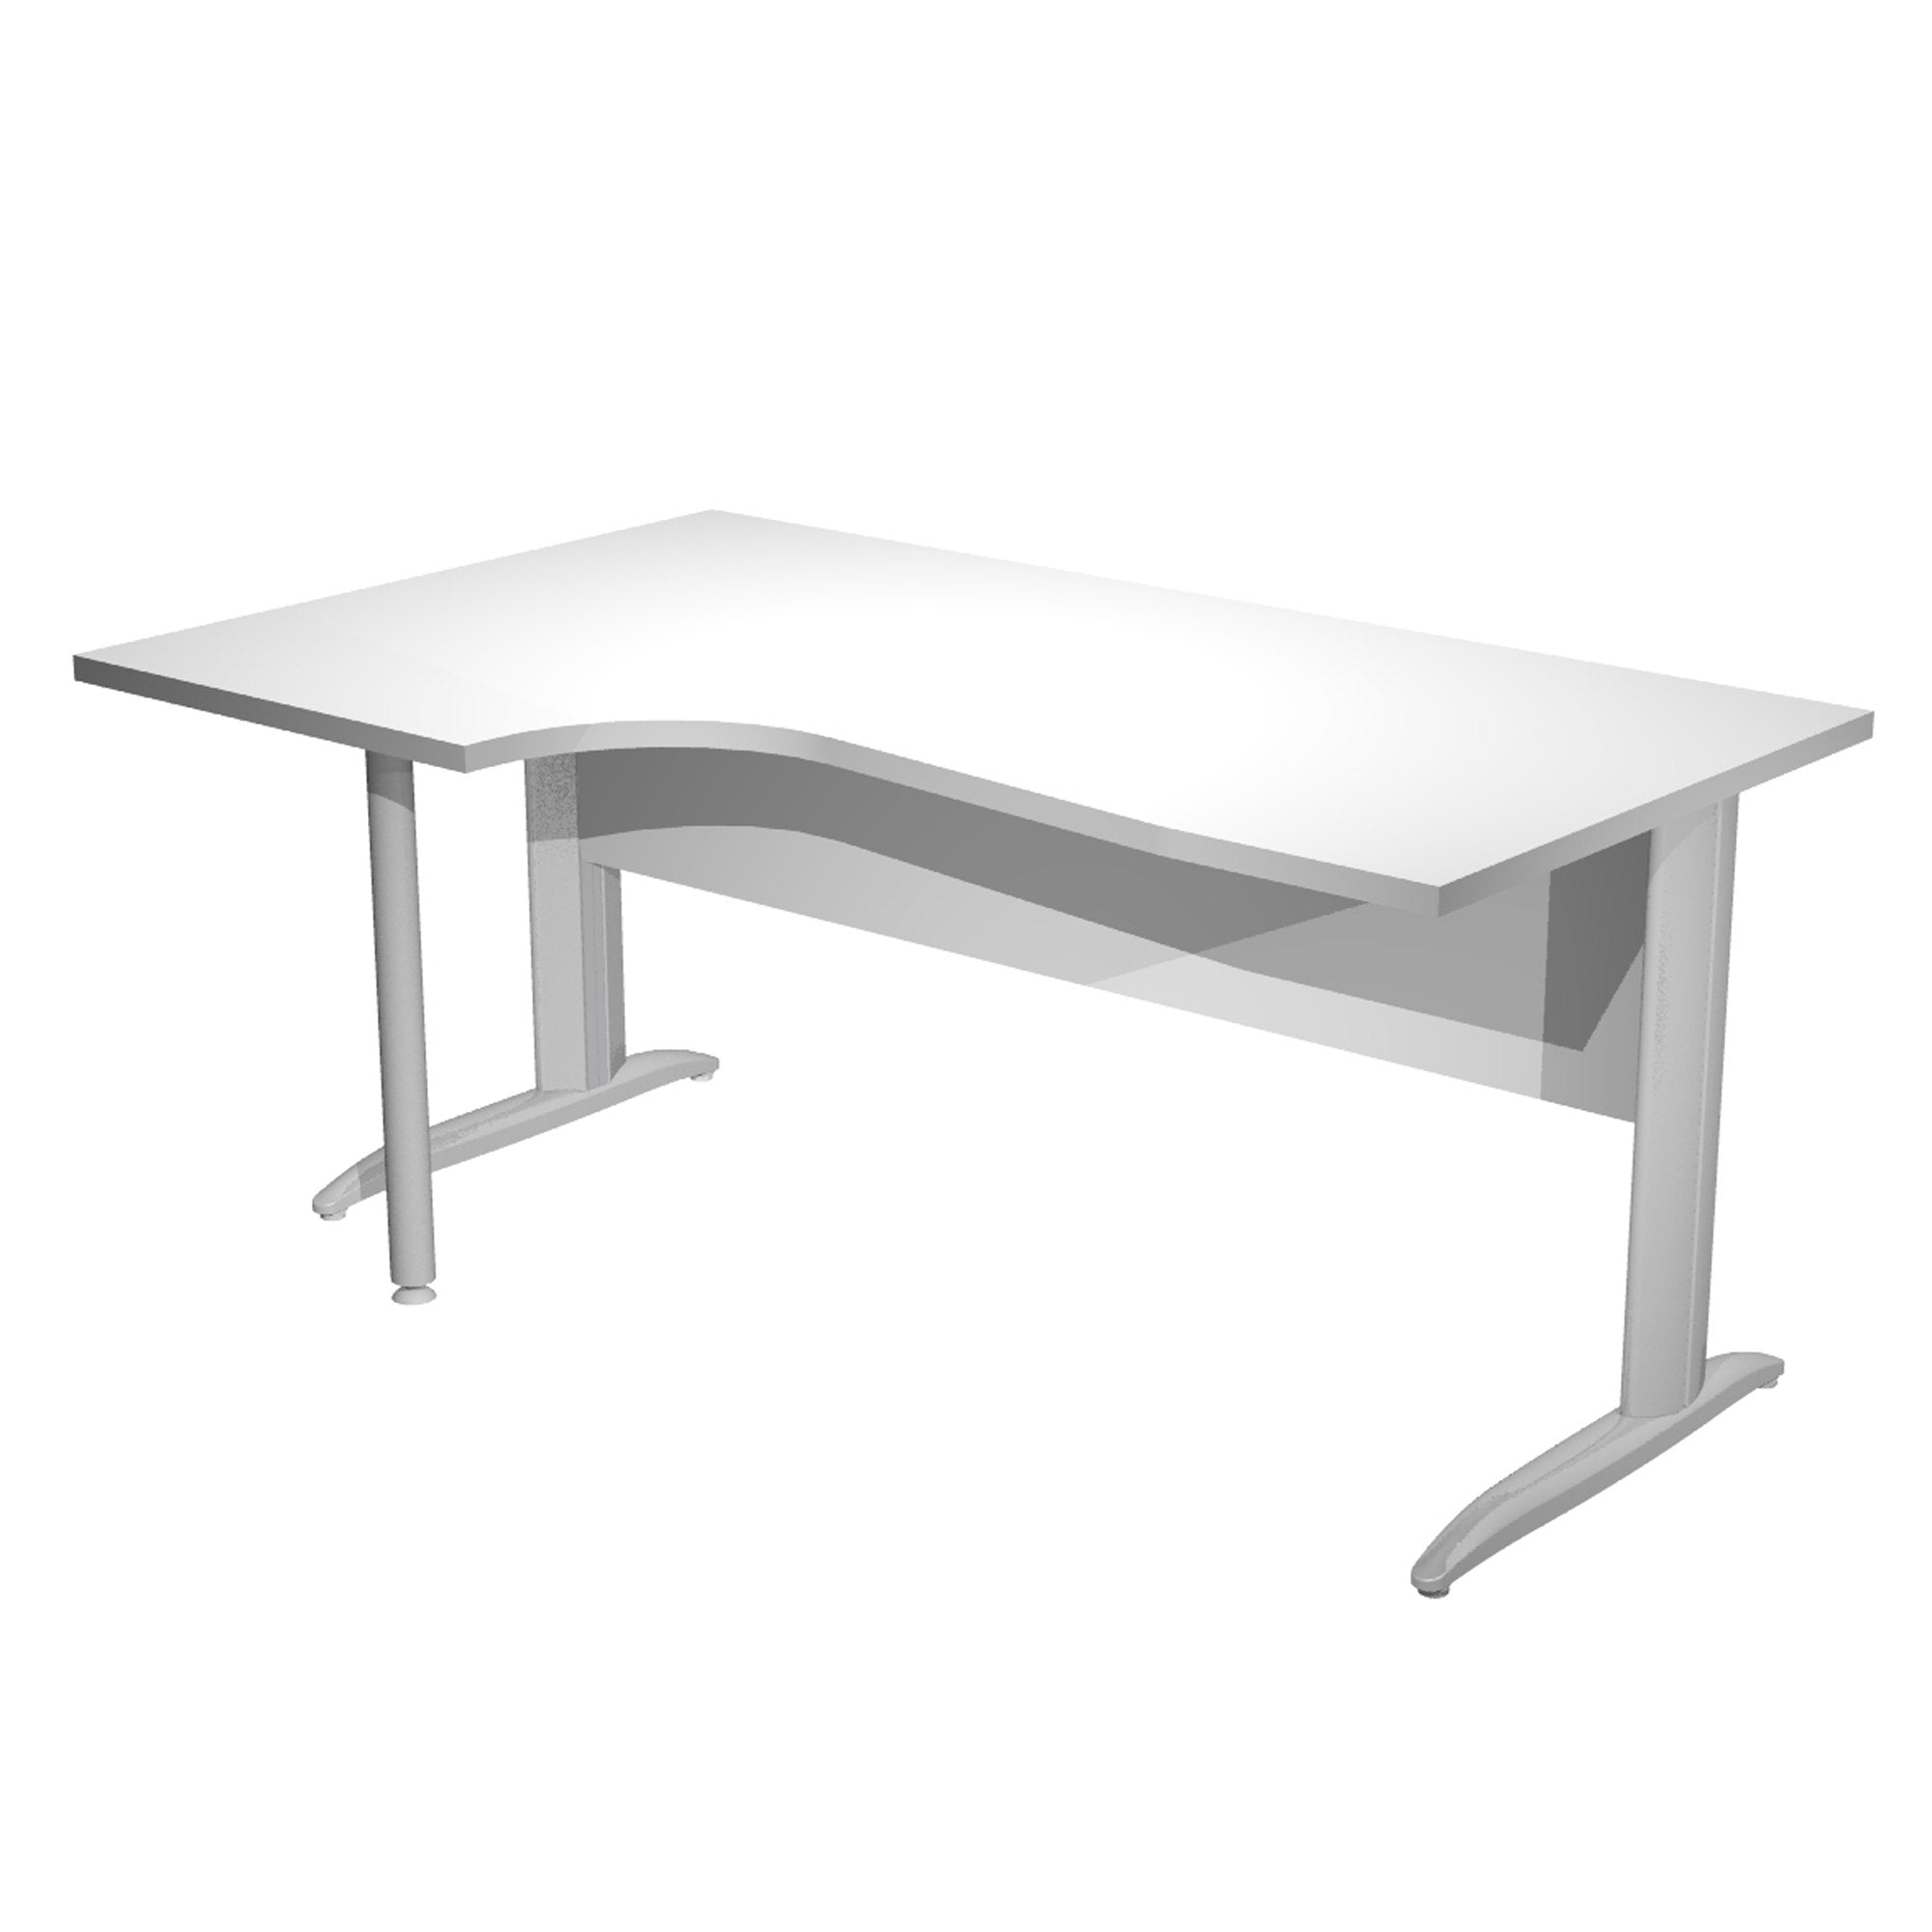 artexport-scrivania-compact-sinistro-160x60-80-100cm-bianco-fianchi-vern-eff-cromo-easy